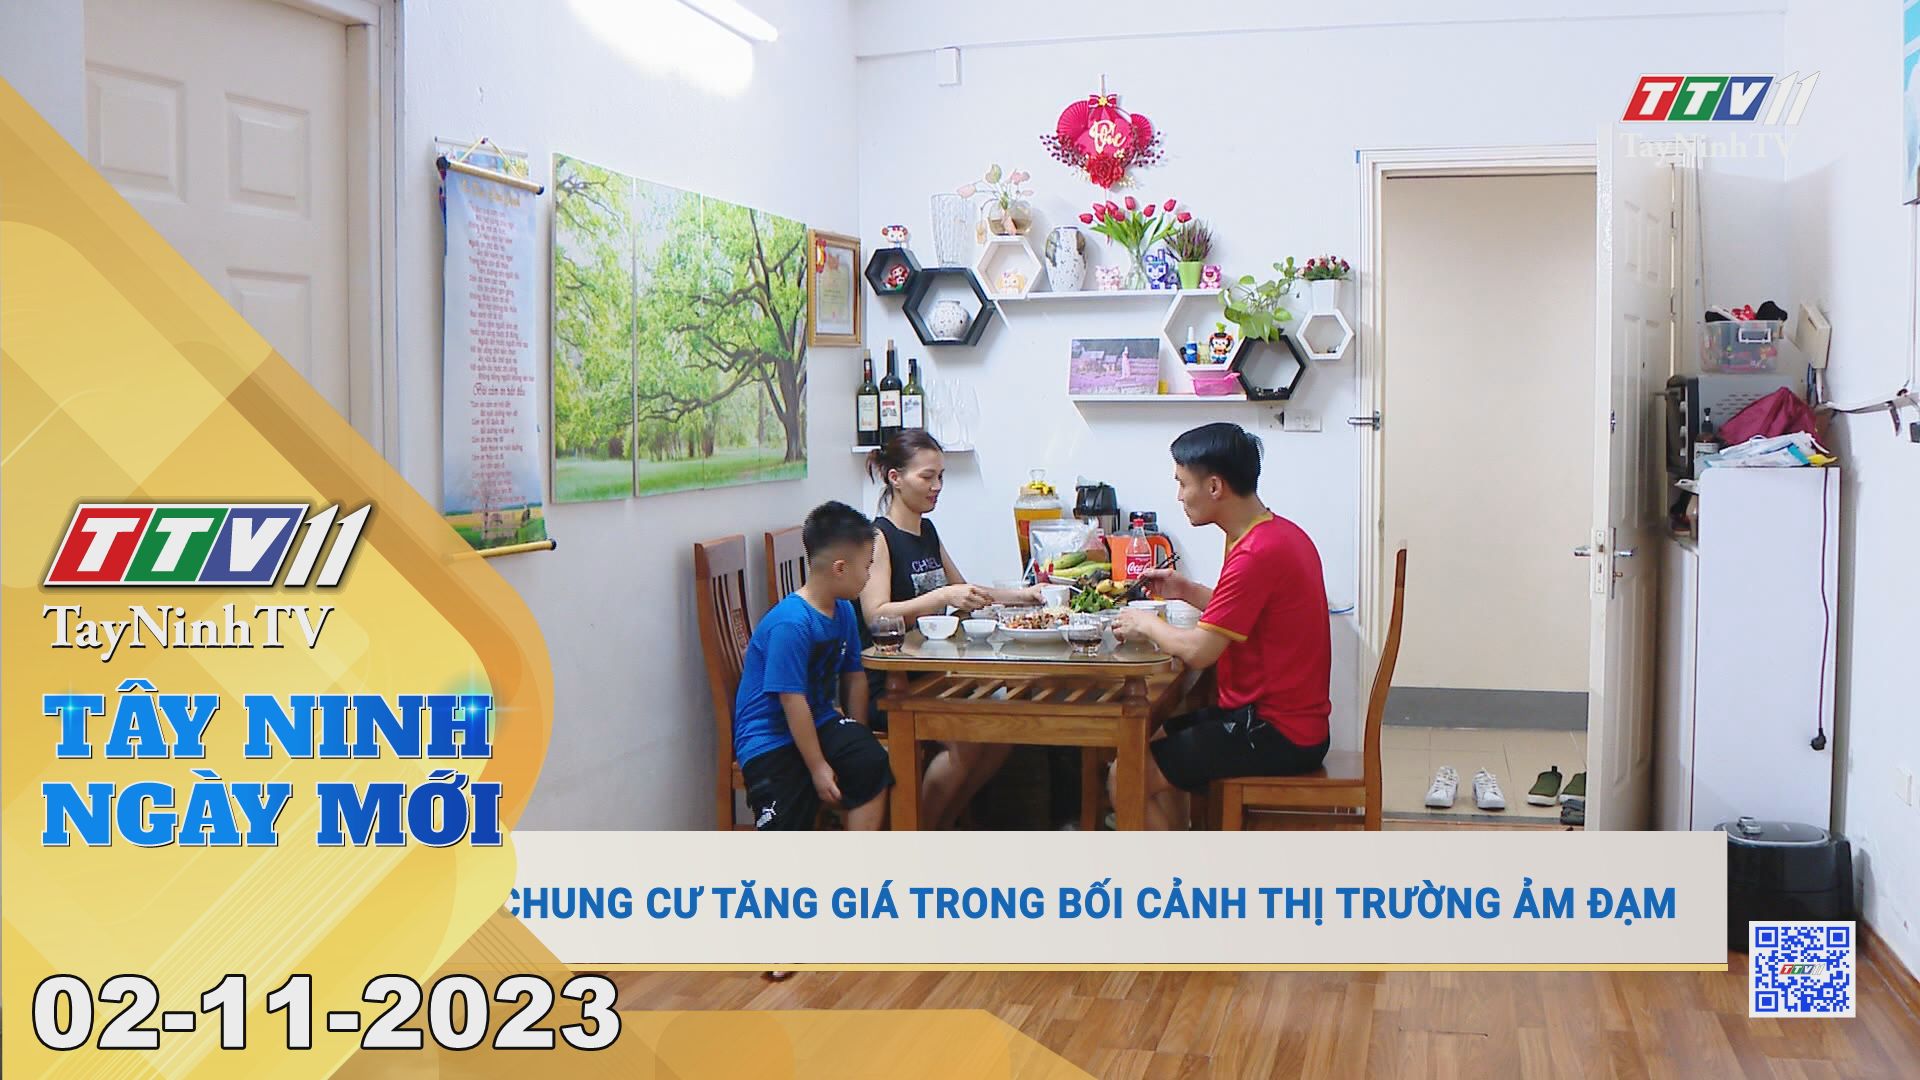 Tây Ninh ngày mới 02-11-2023 | Tin tức hôm nay | TayNinhTV